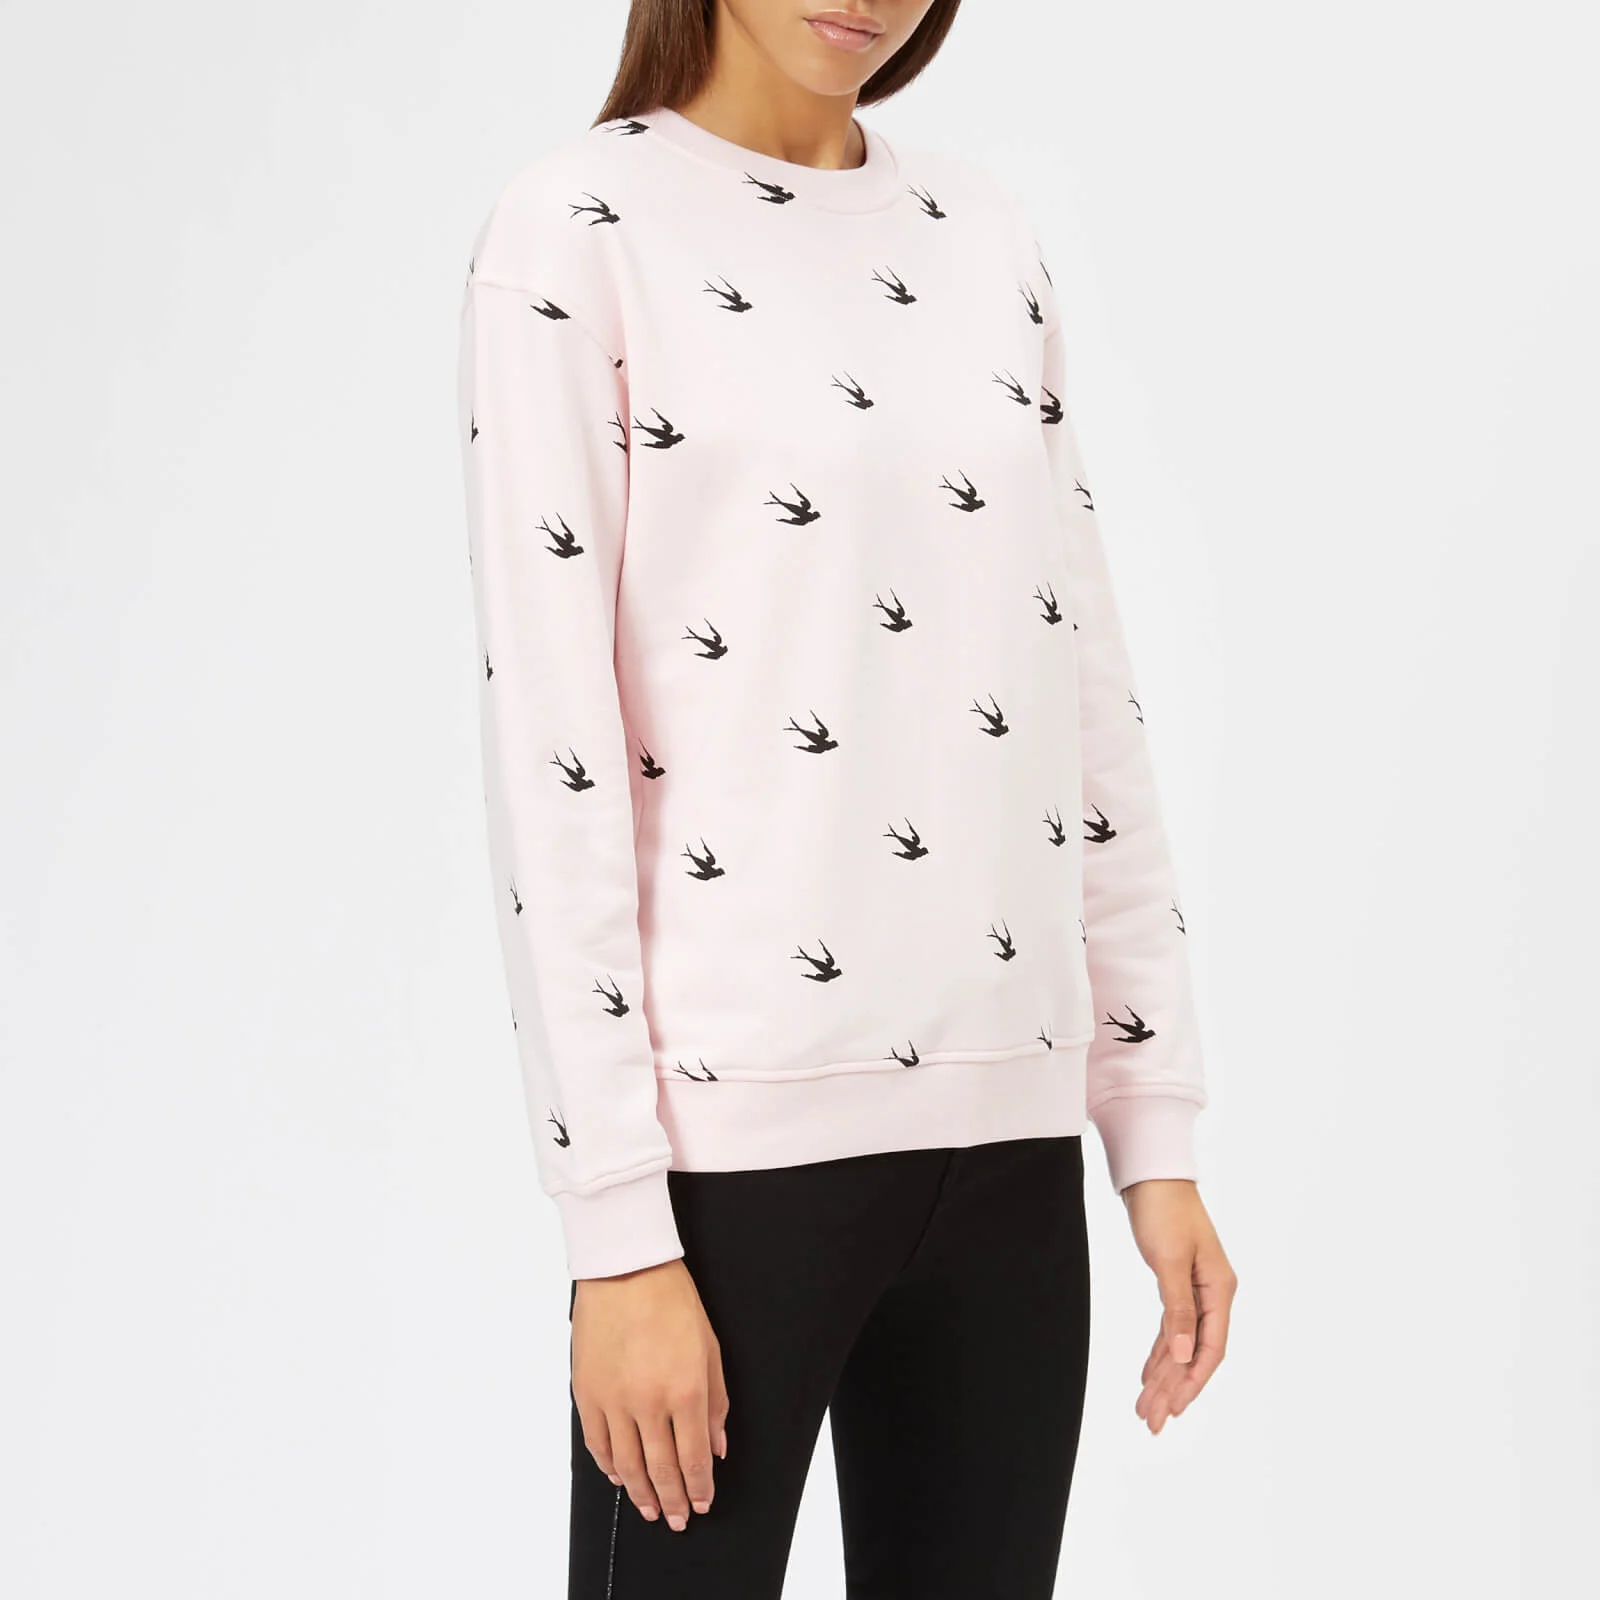 McQ Alexander McQueen Women's Classic Sweatshirt - Post It Pink Image 1